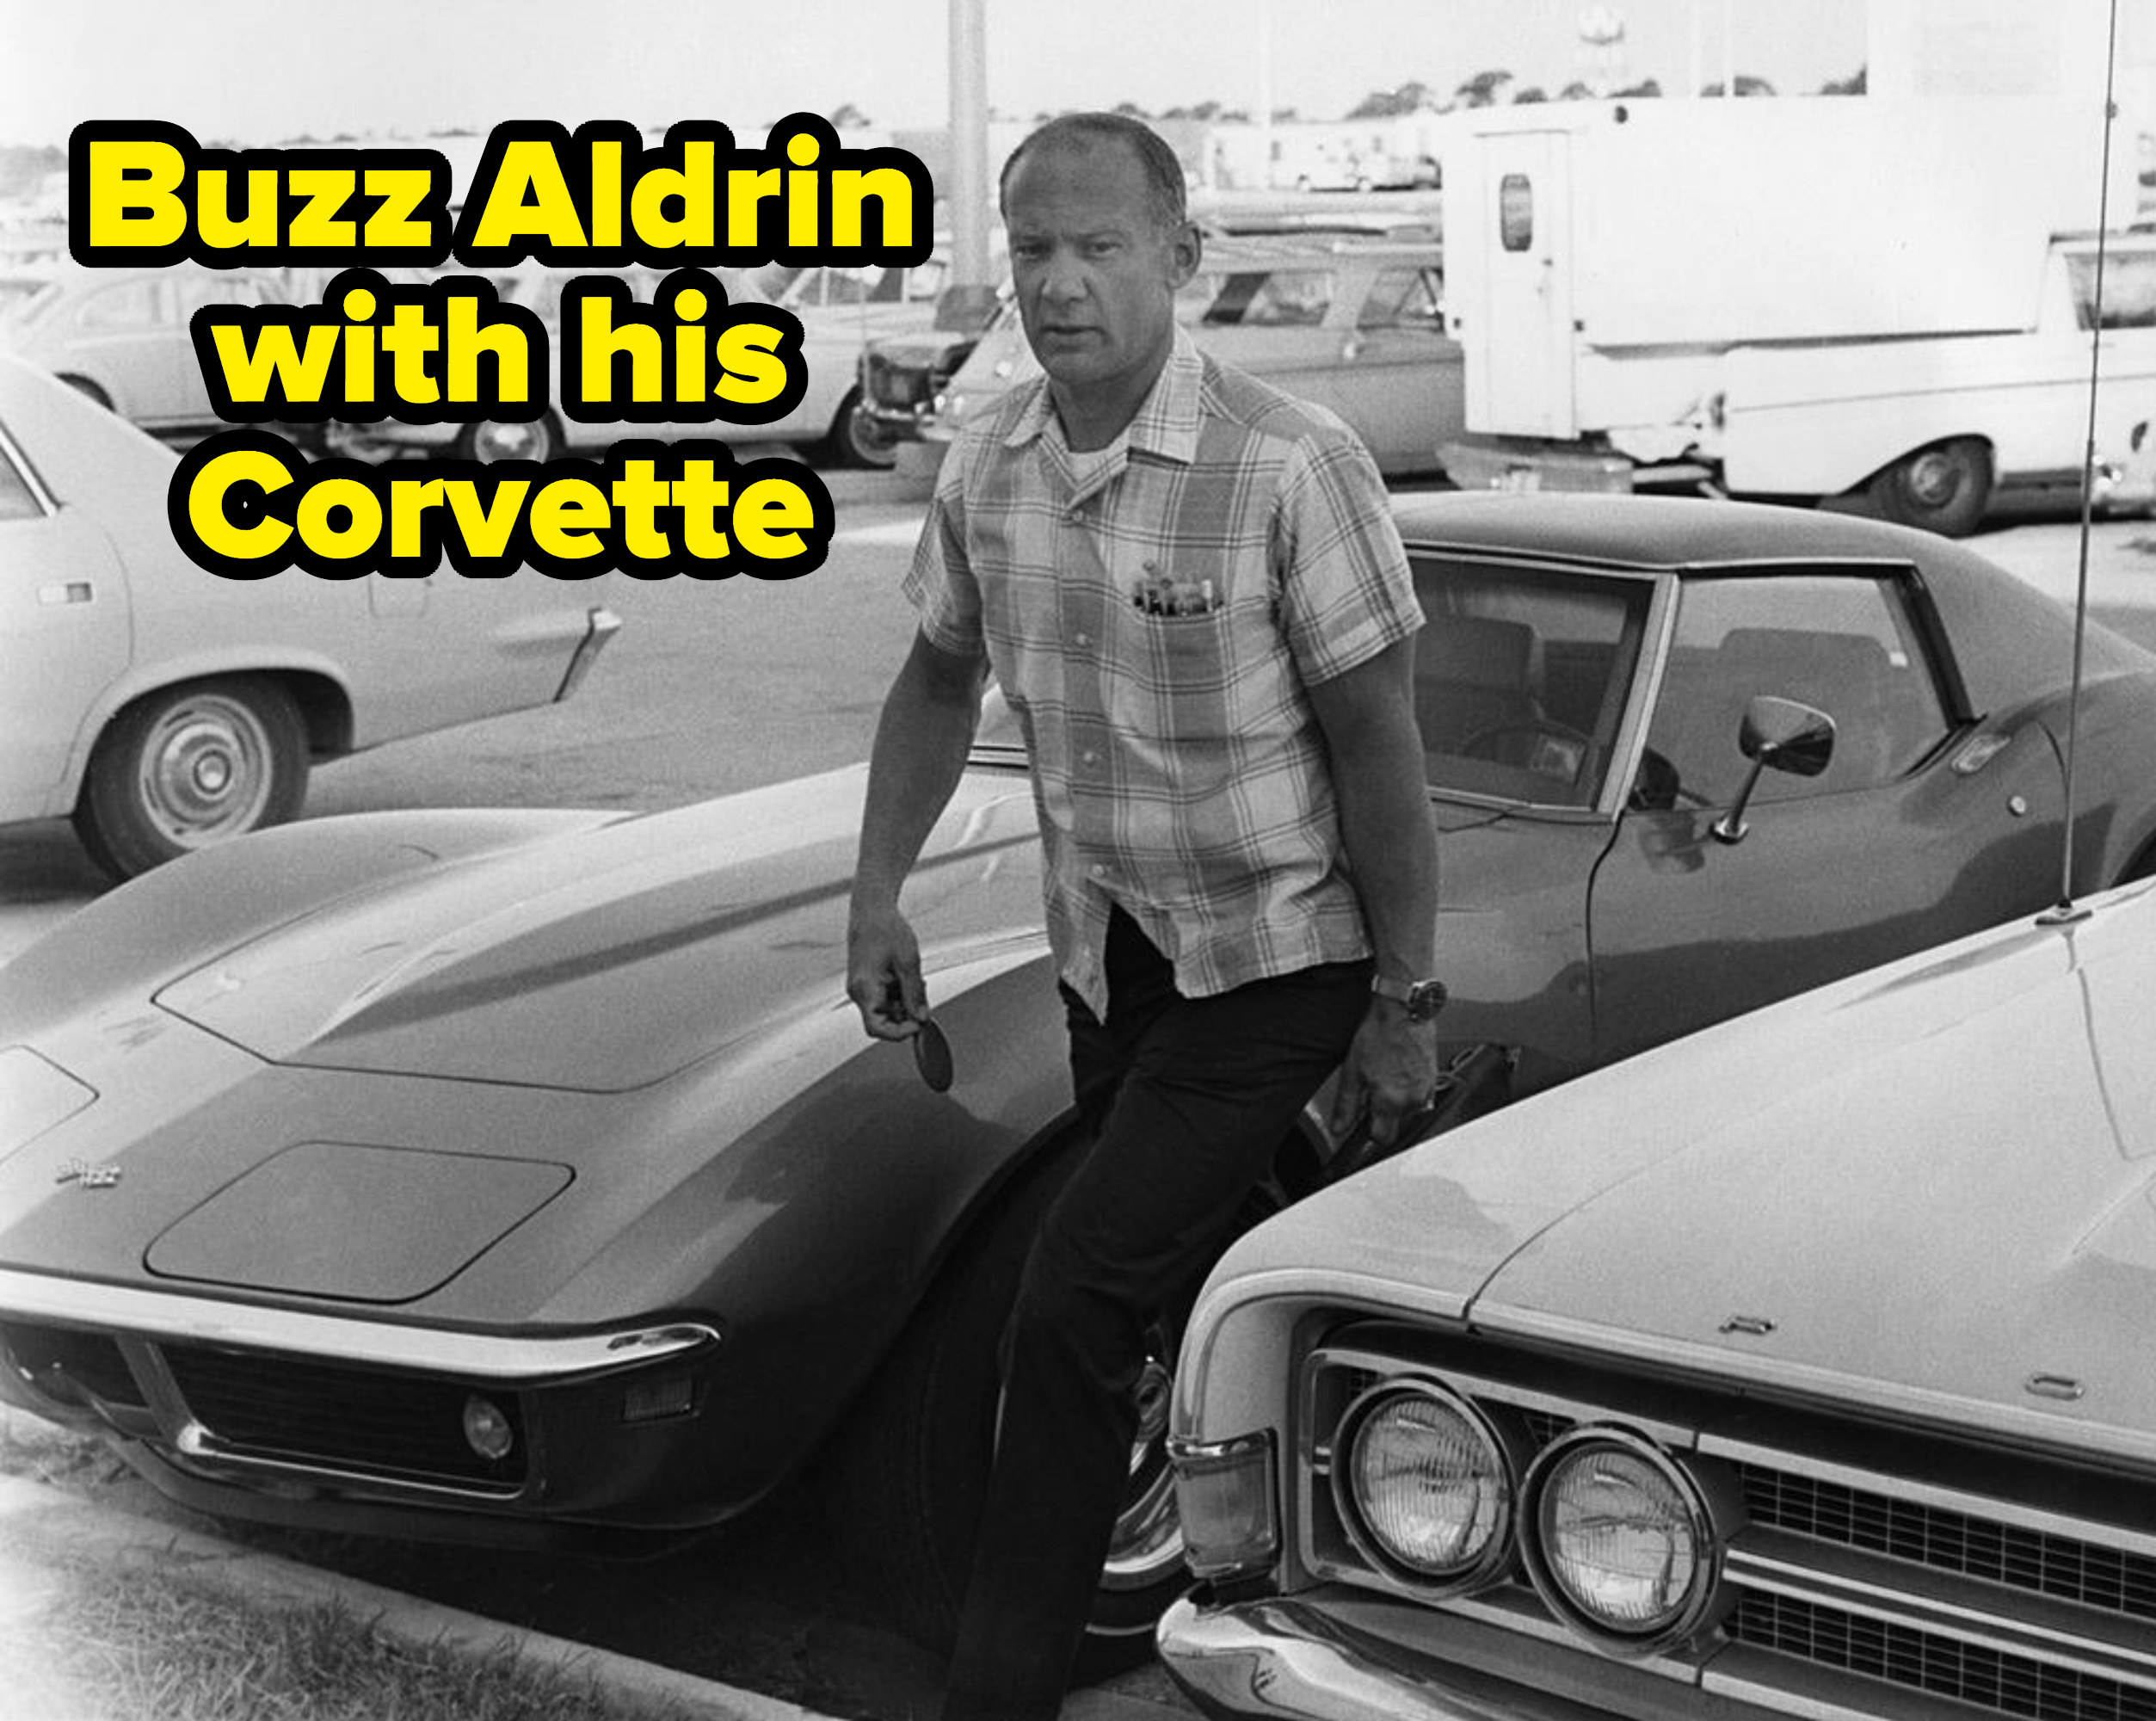 Buzz Aldrin next to his car